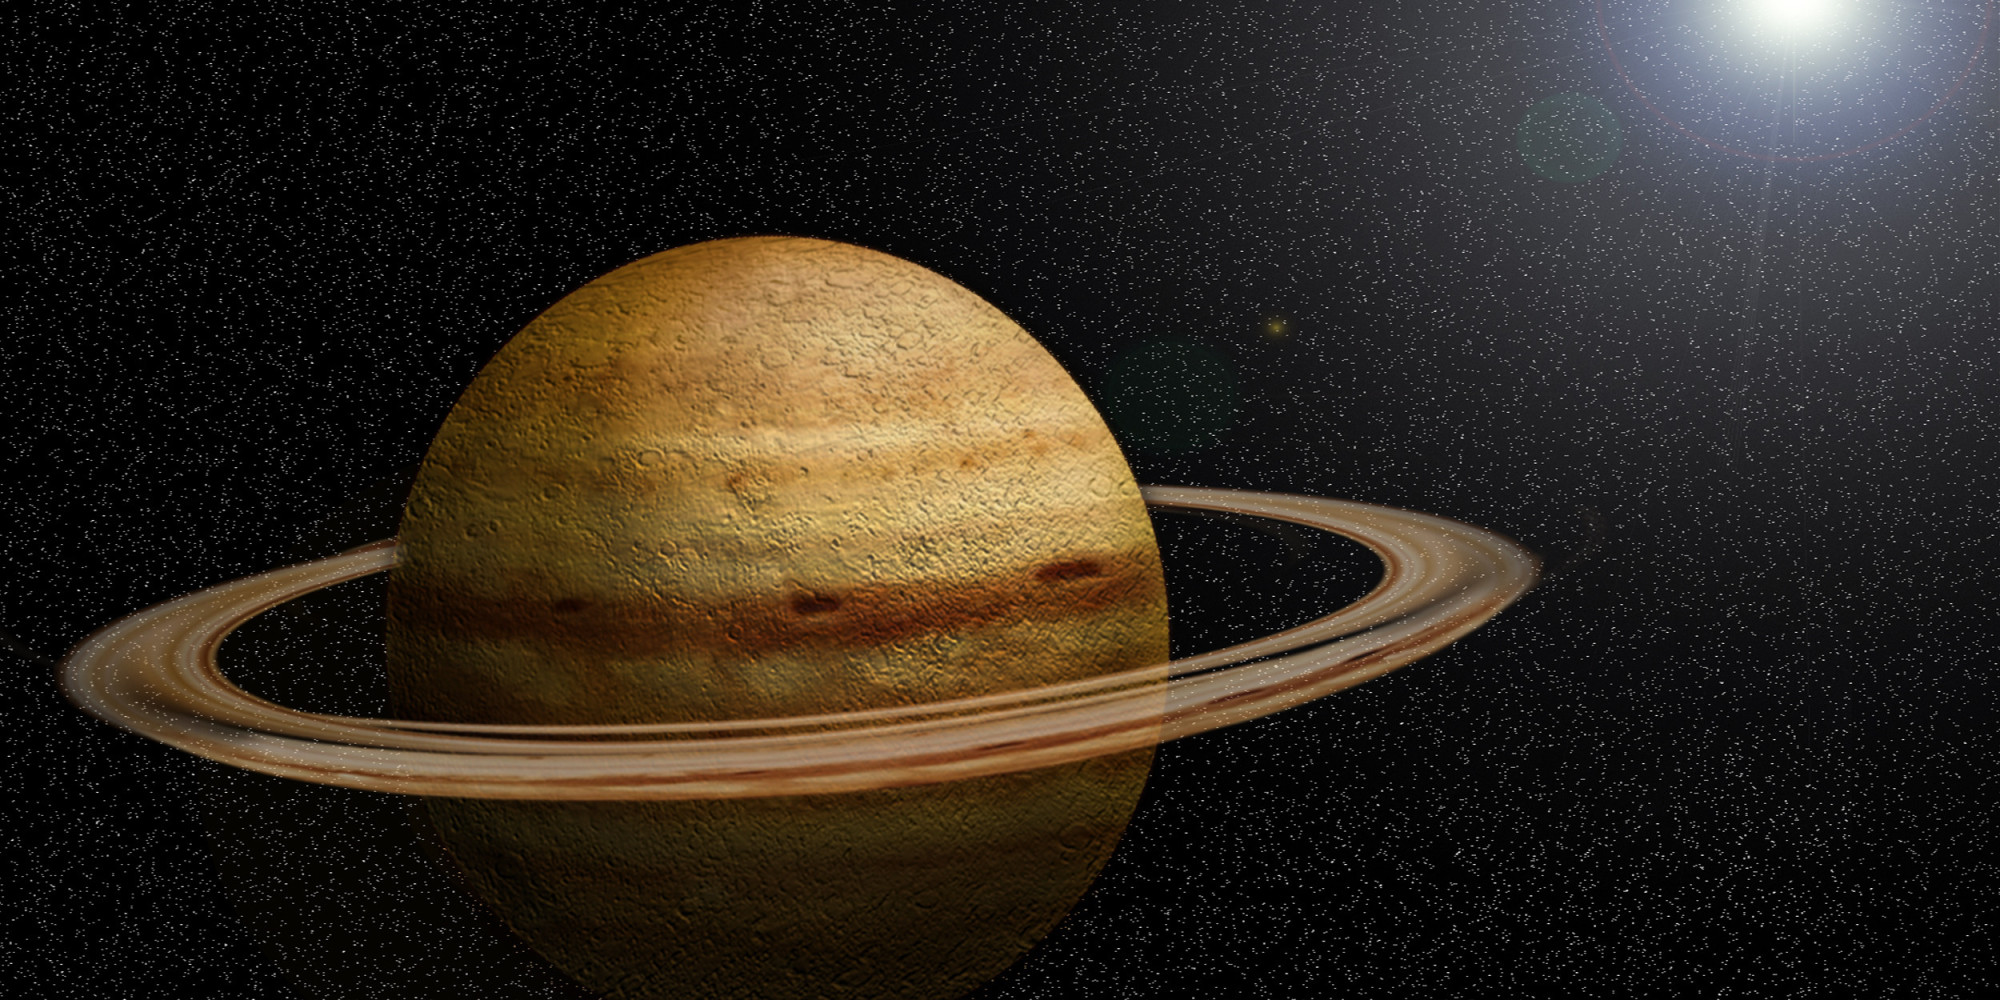 Планеты солнечной системы Планета Сатурн